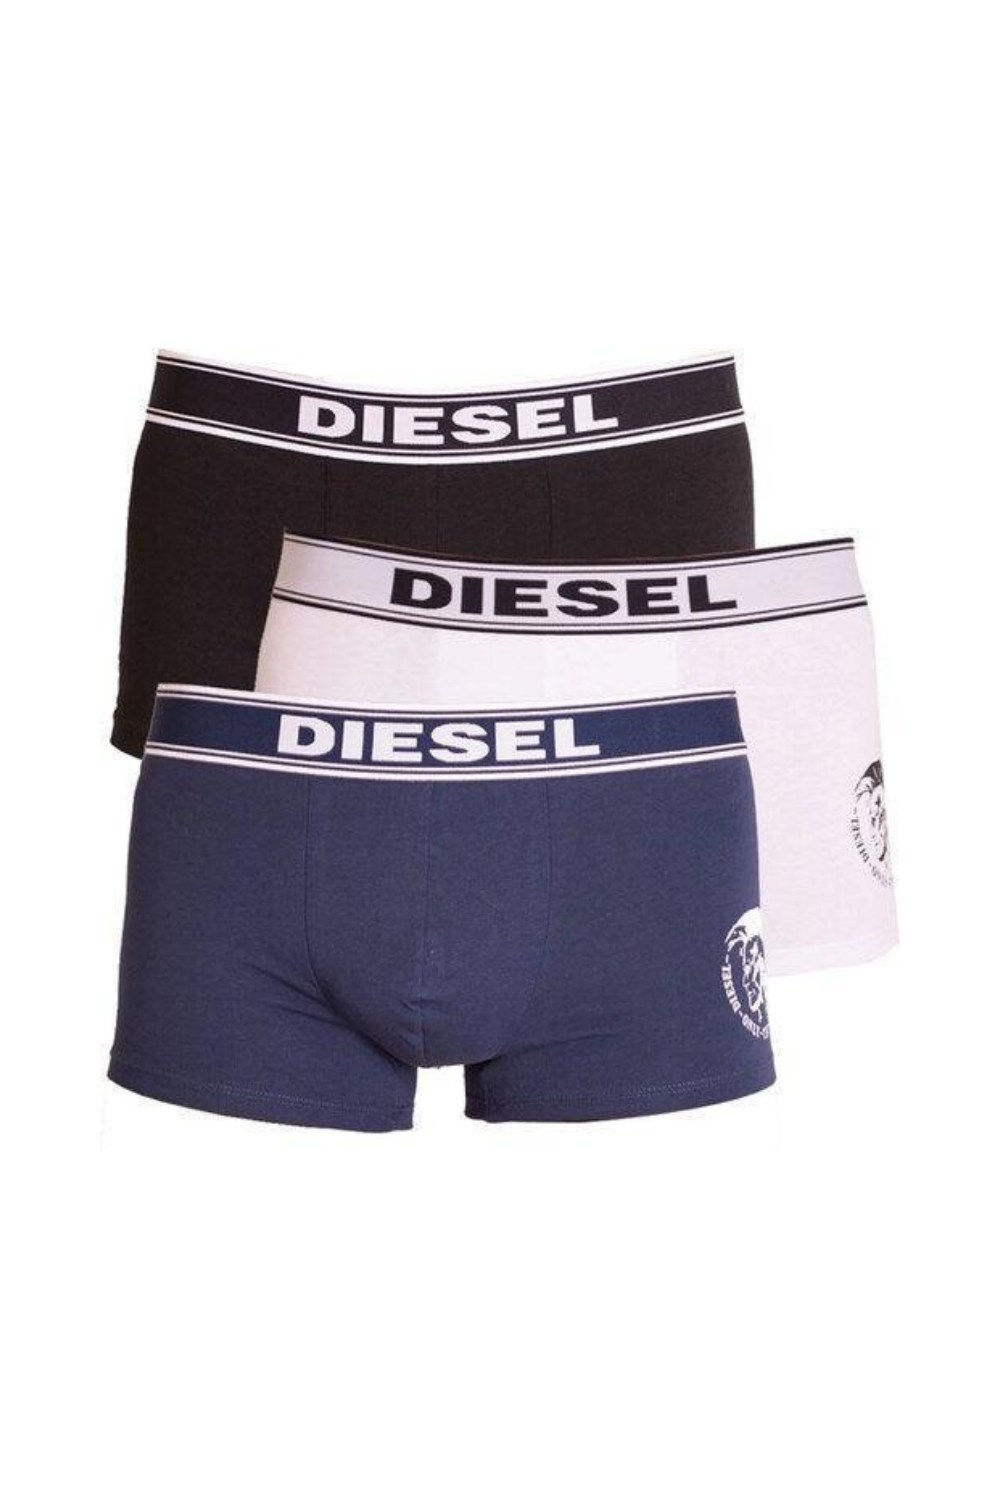 Diesel Boy's Underwear